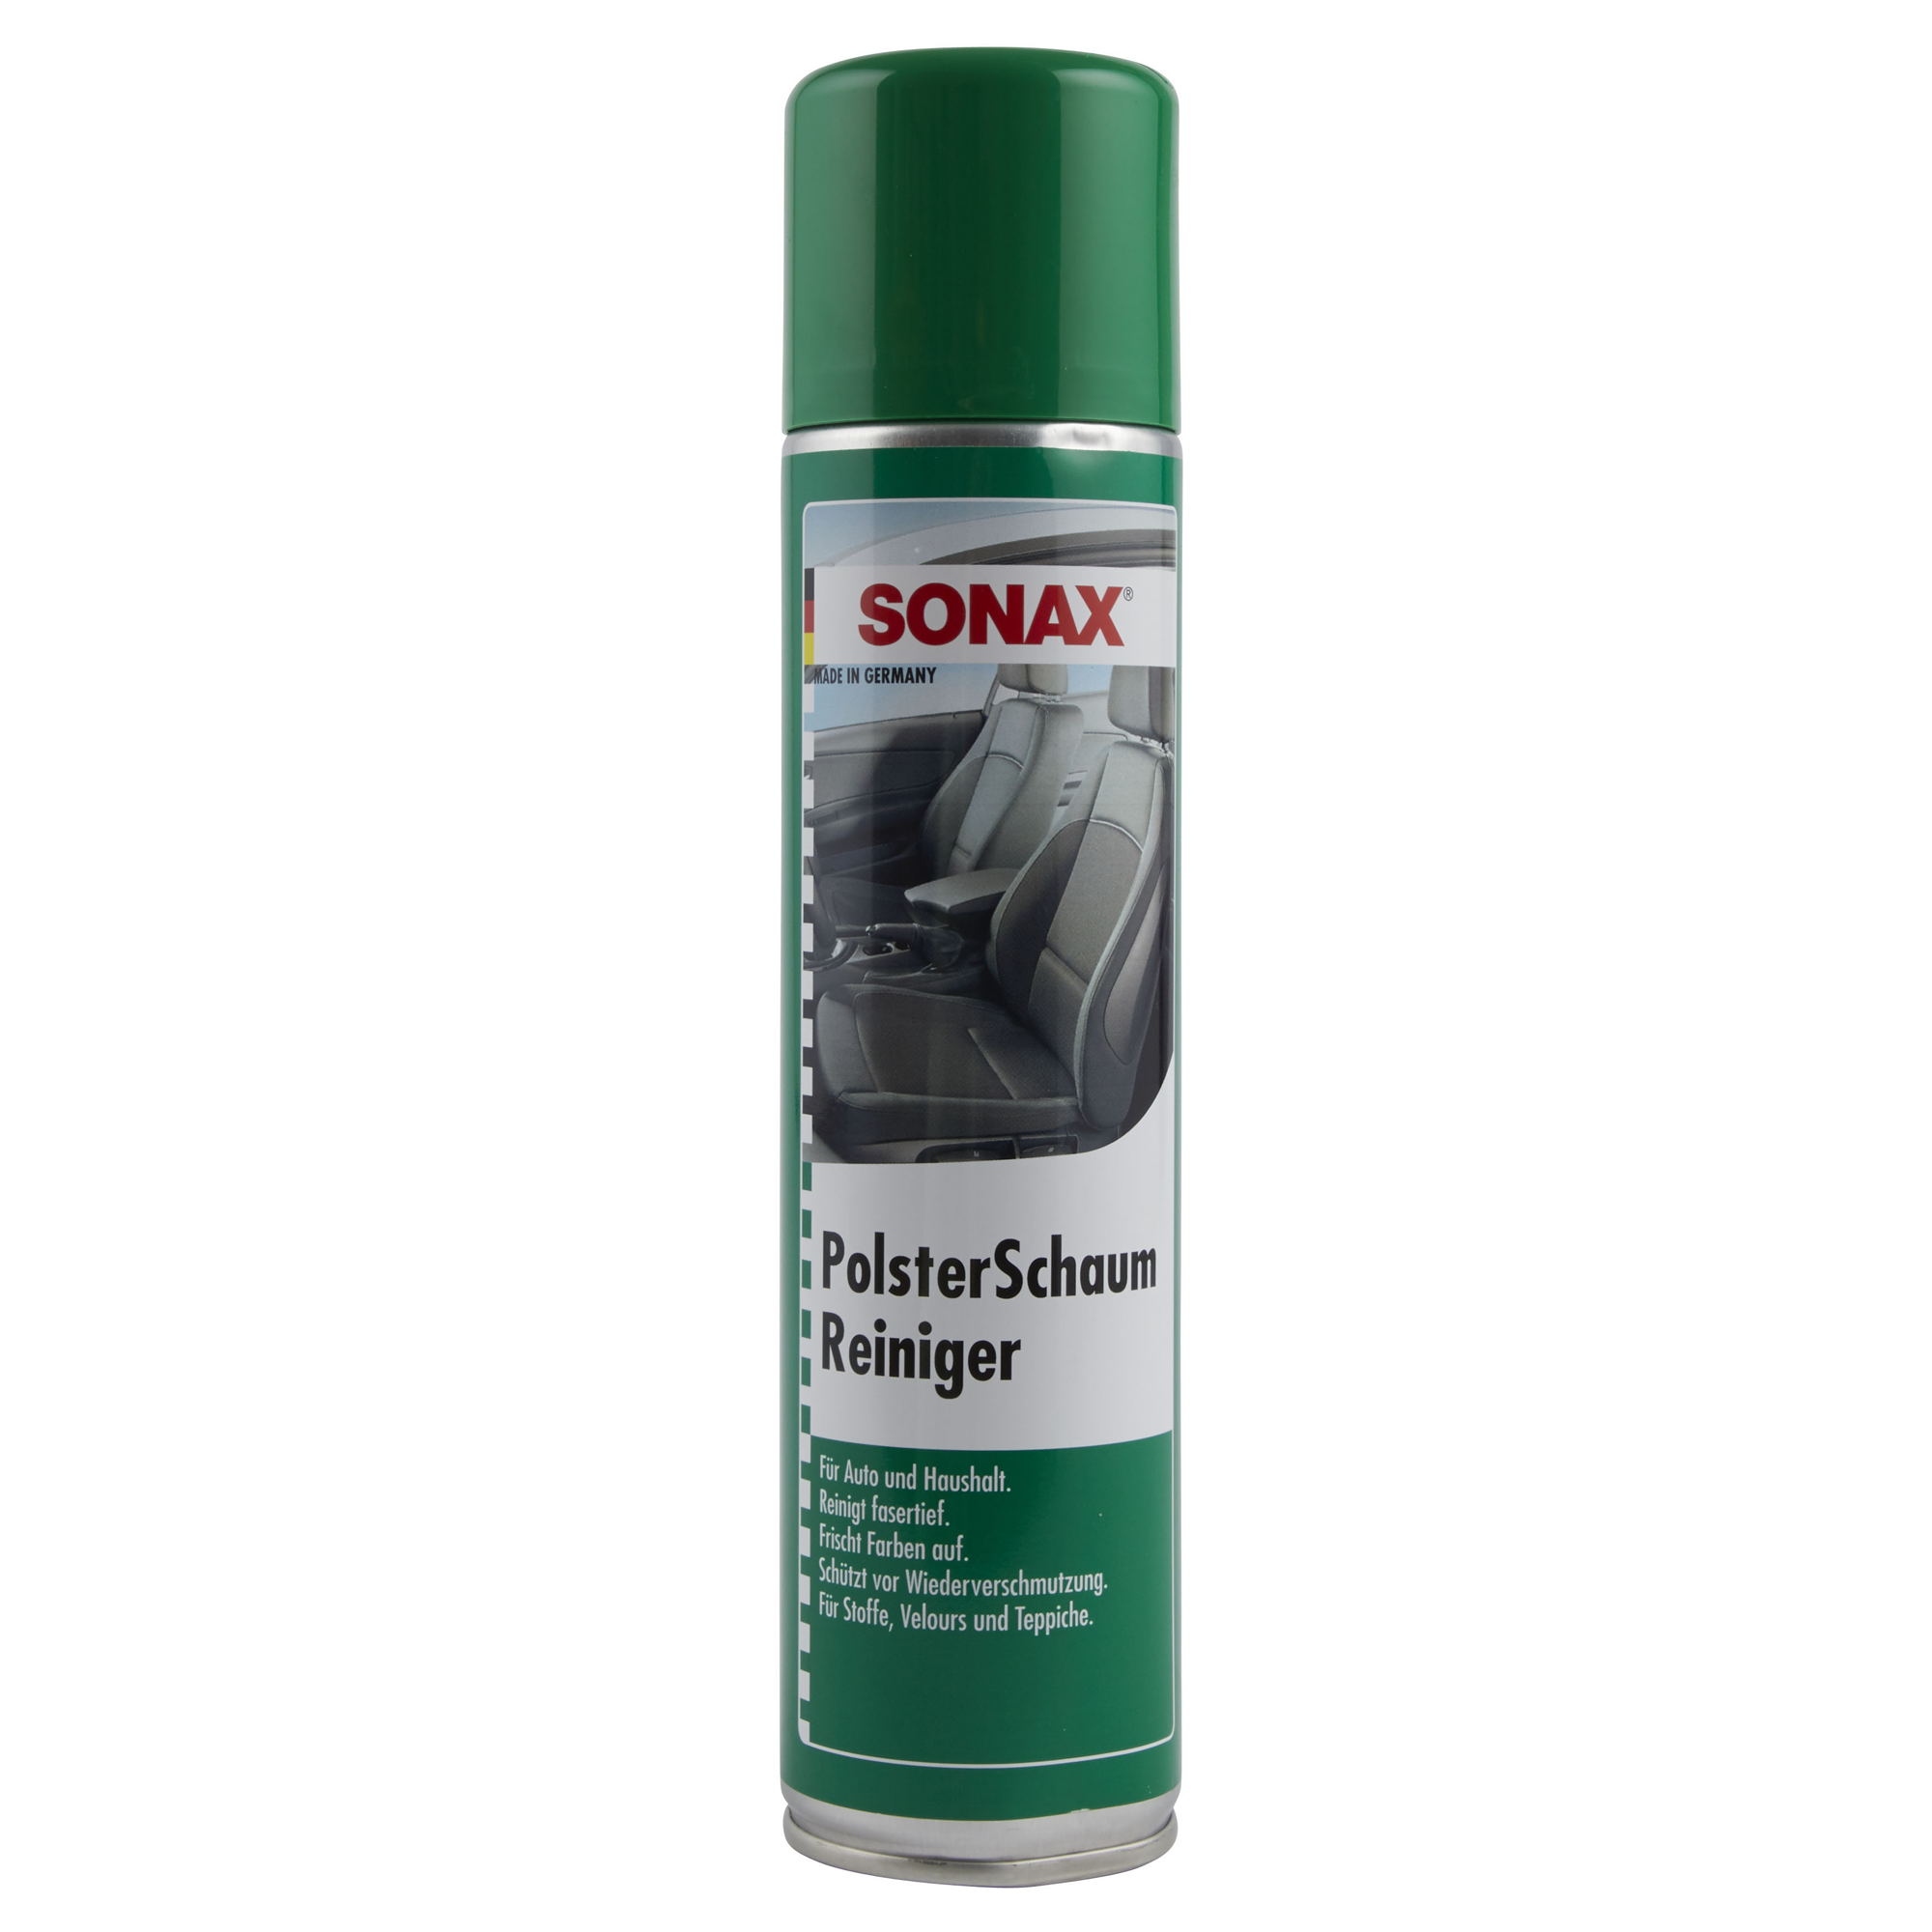 Polsterreiniger Schaum Sonax Polster Schaum Reiniger, 250ml - 306141 - Pro  Detailing